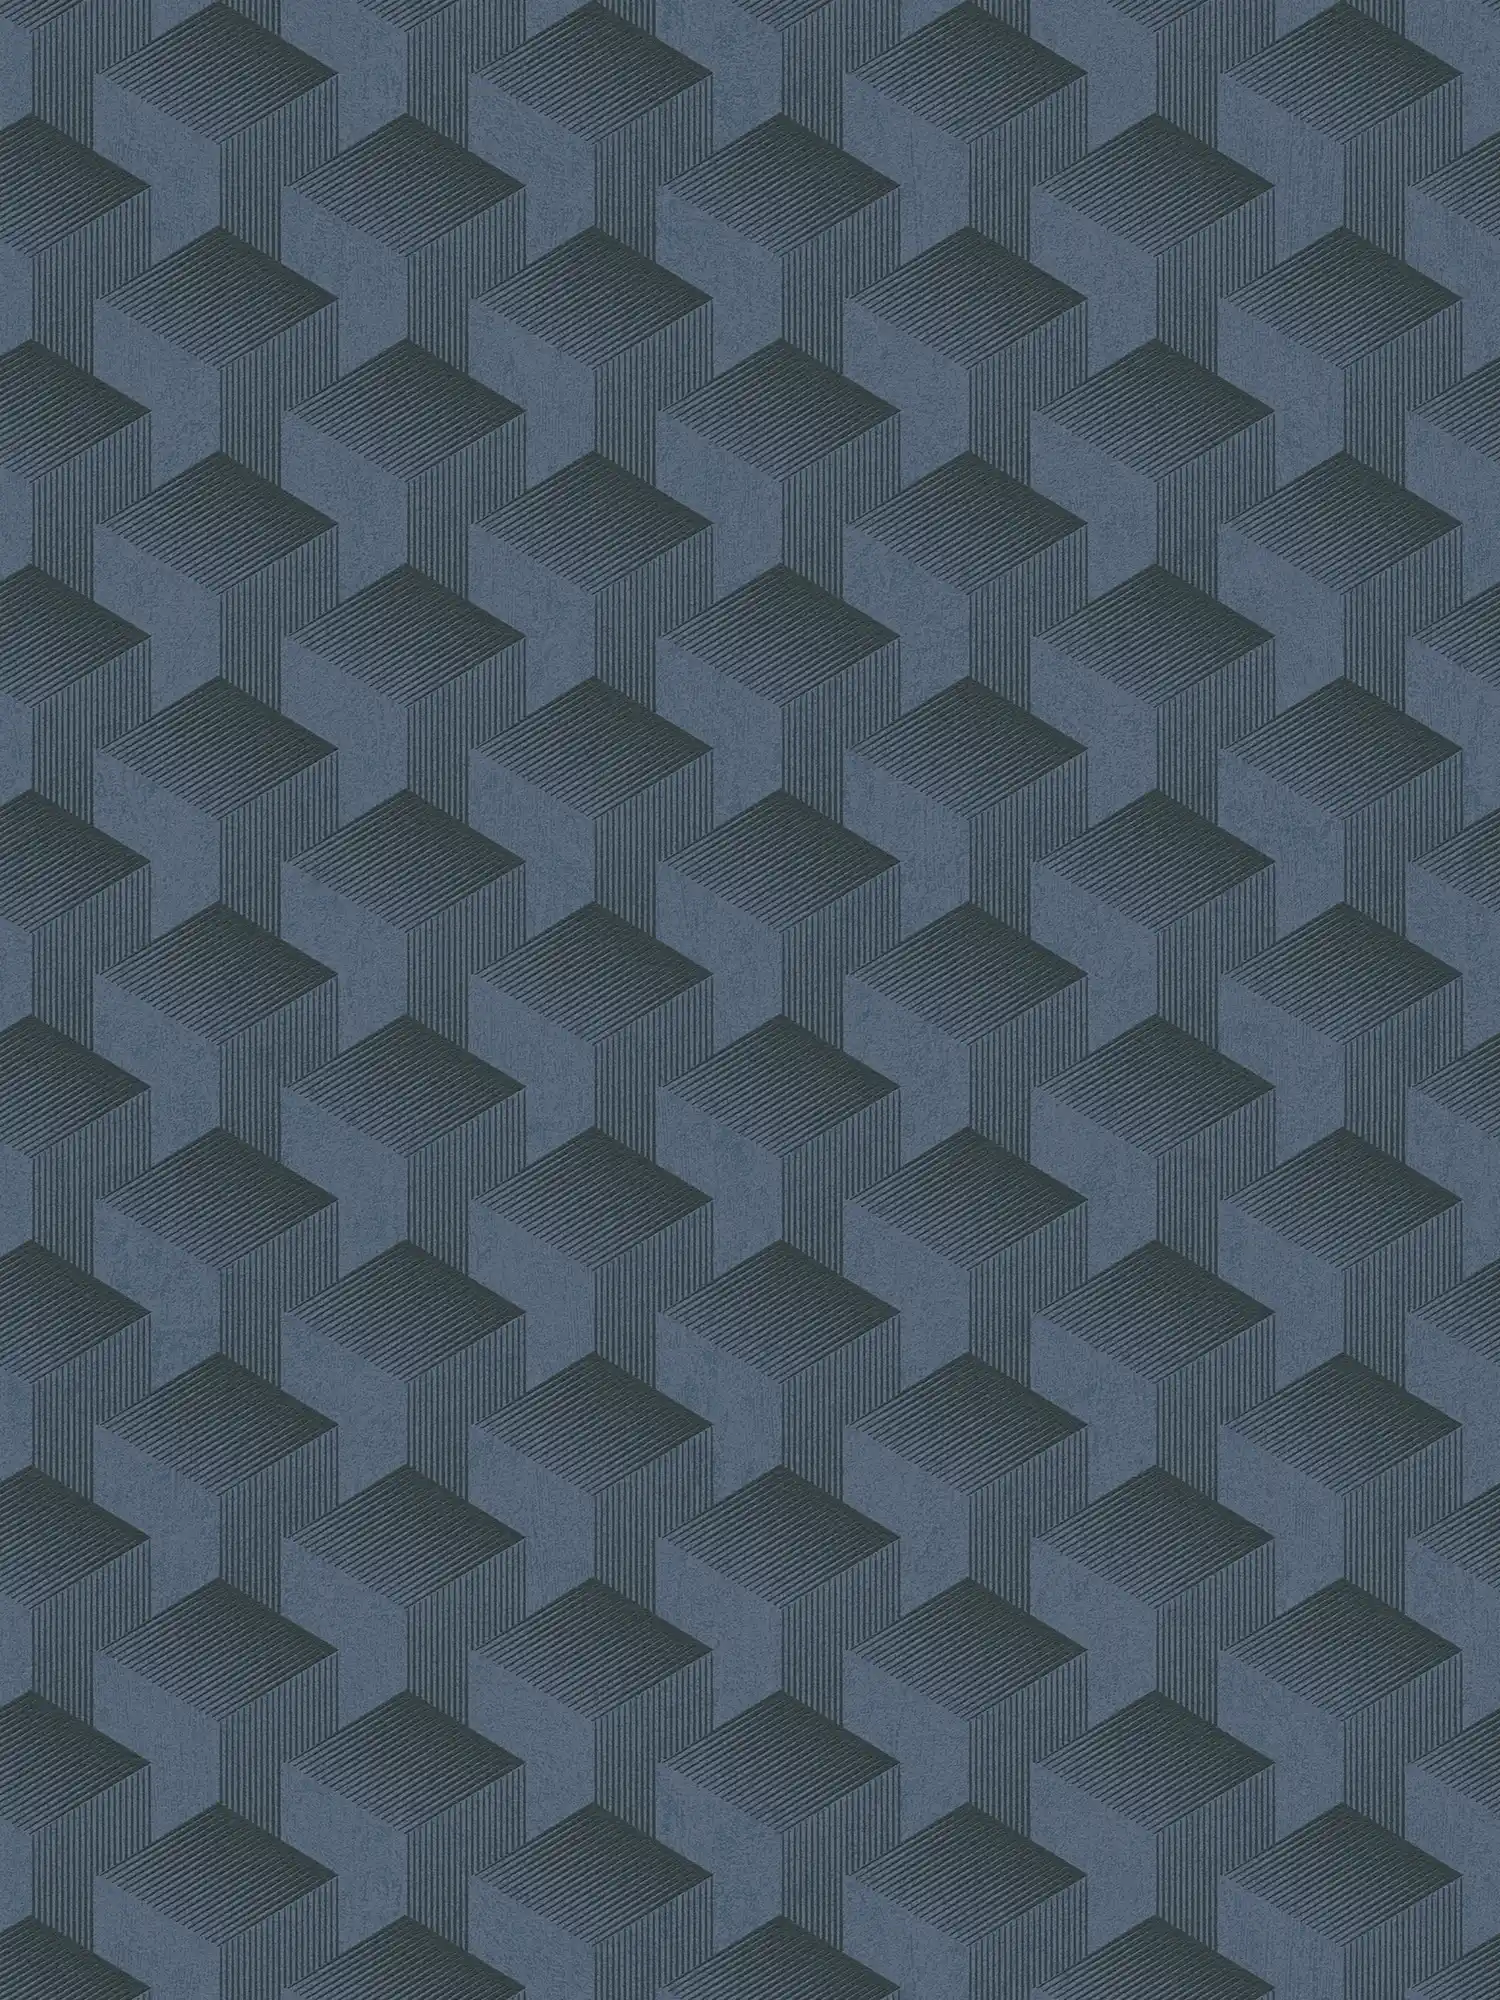 papier peint en papier graphique avec motif en 3D mat - bleu, noir
